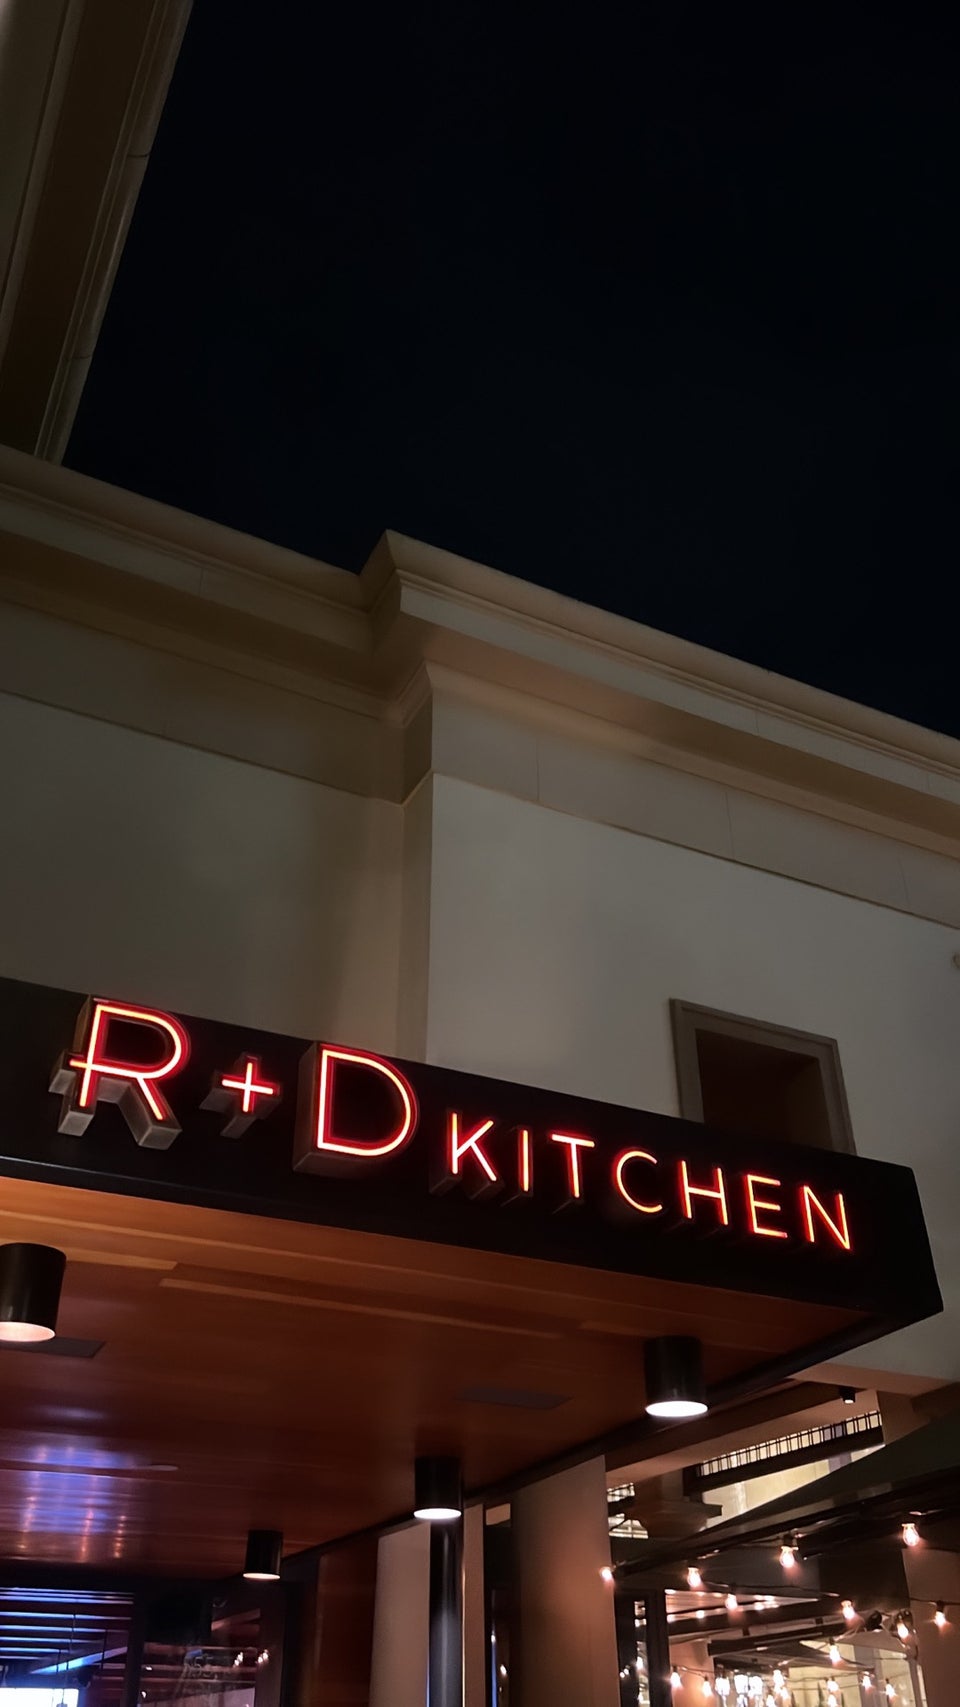 R+D Kitchen